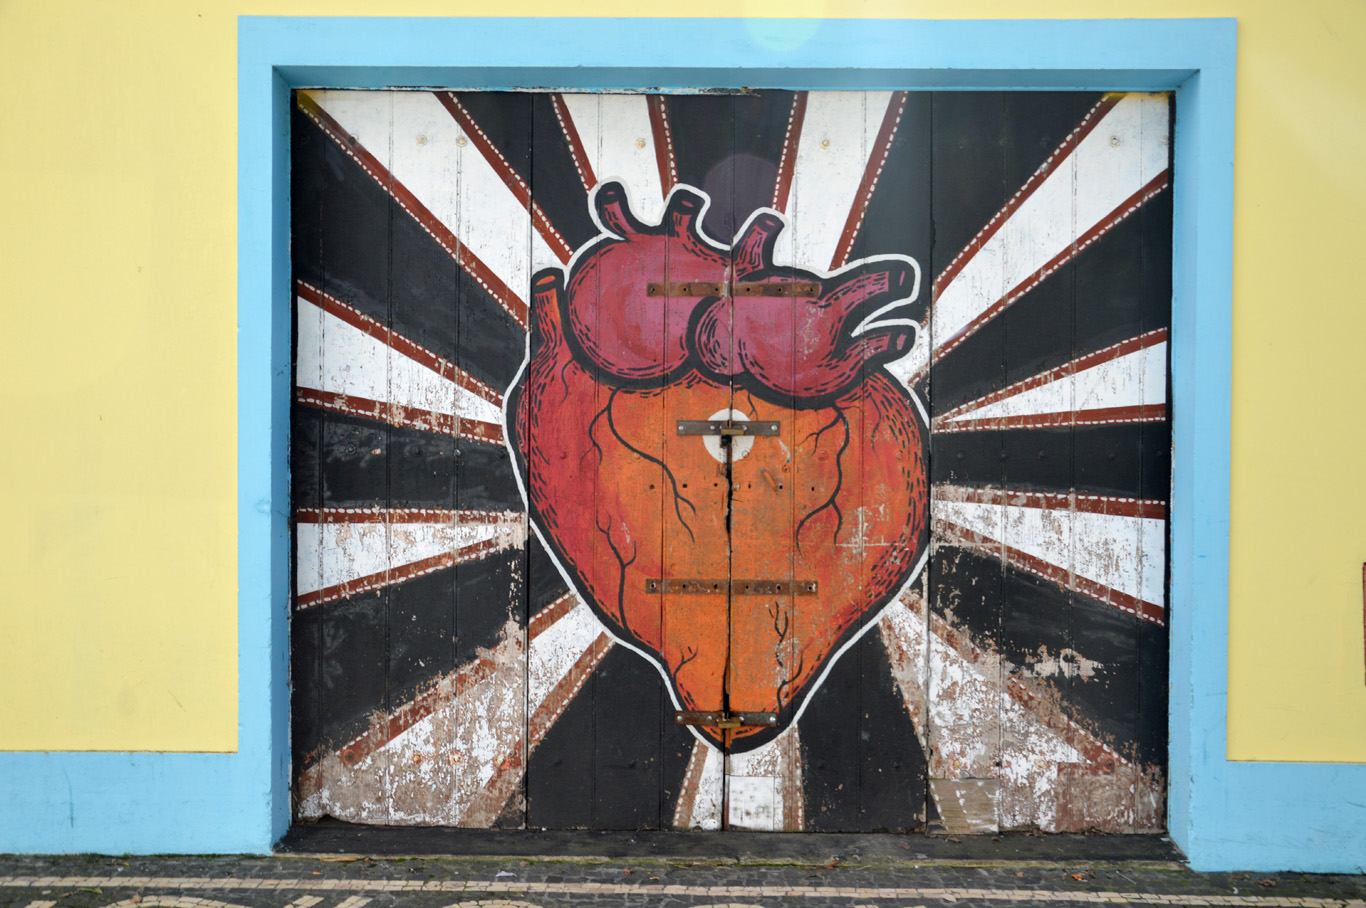 A graffiti in Ponta Delgada